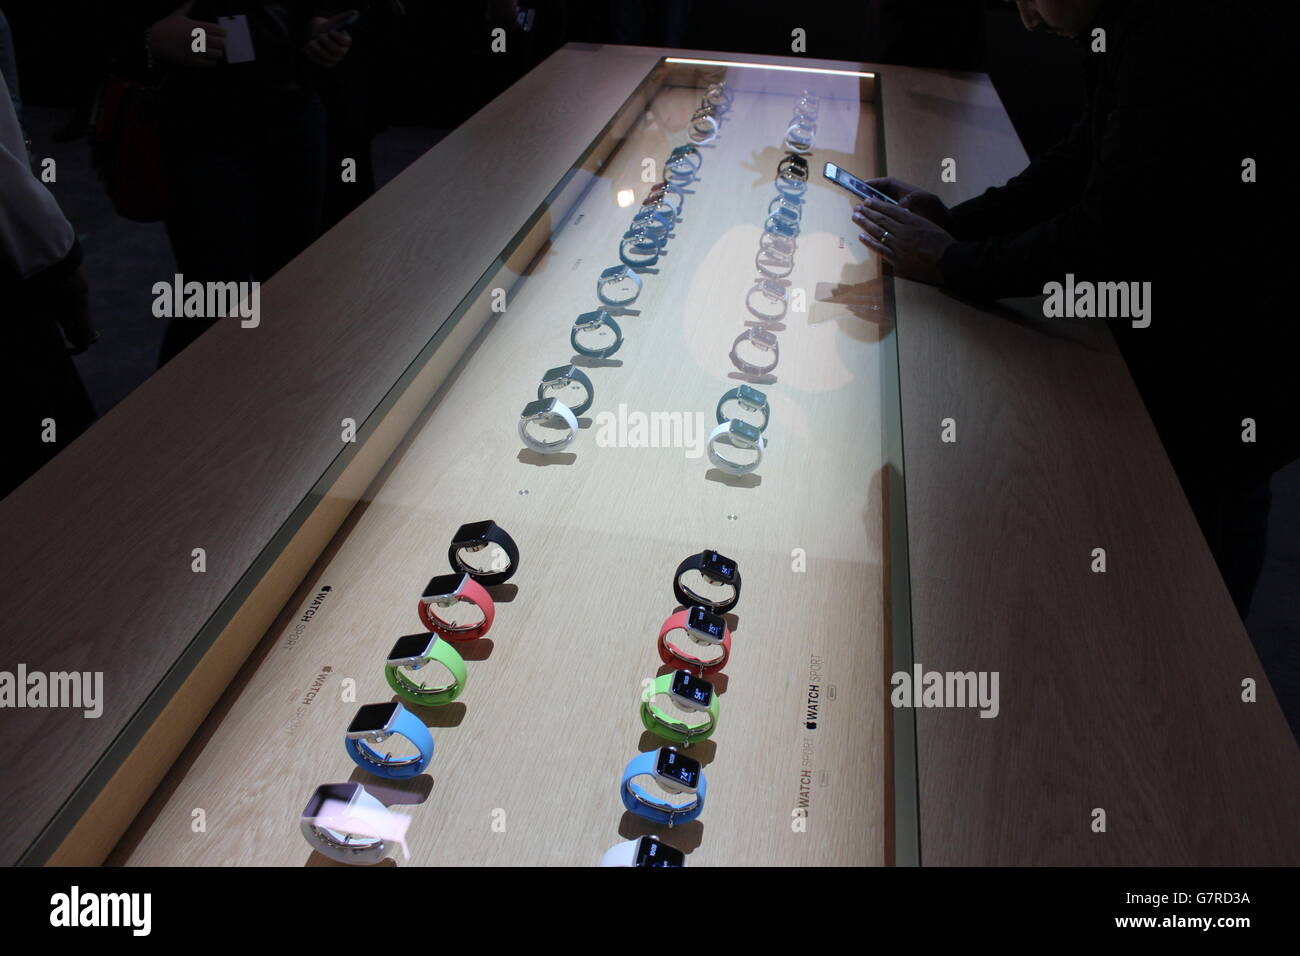 Diversi stili del nuovo Apple Watch Sport in mostra in occasione di un evento Apple a Berlino, in Germania, dopo che l'azienda di computer ha presentato nuovi prodotti. Foto Stock